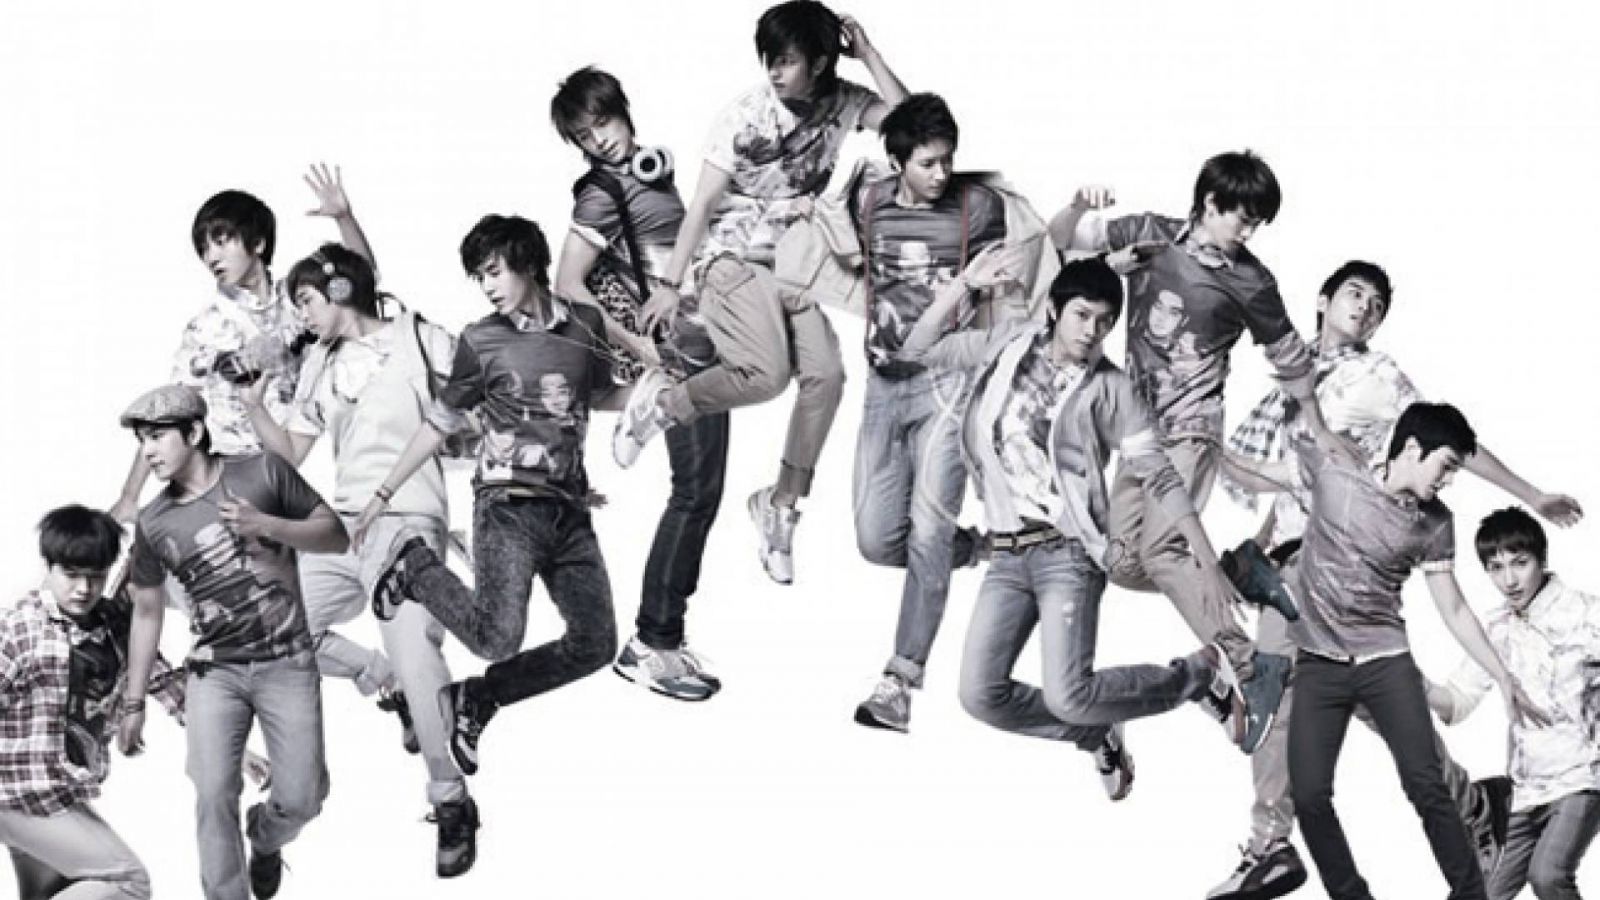 Super Junior retornará com 10 membros © Avex Entertainment Inc.